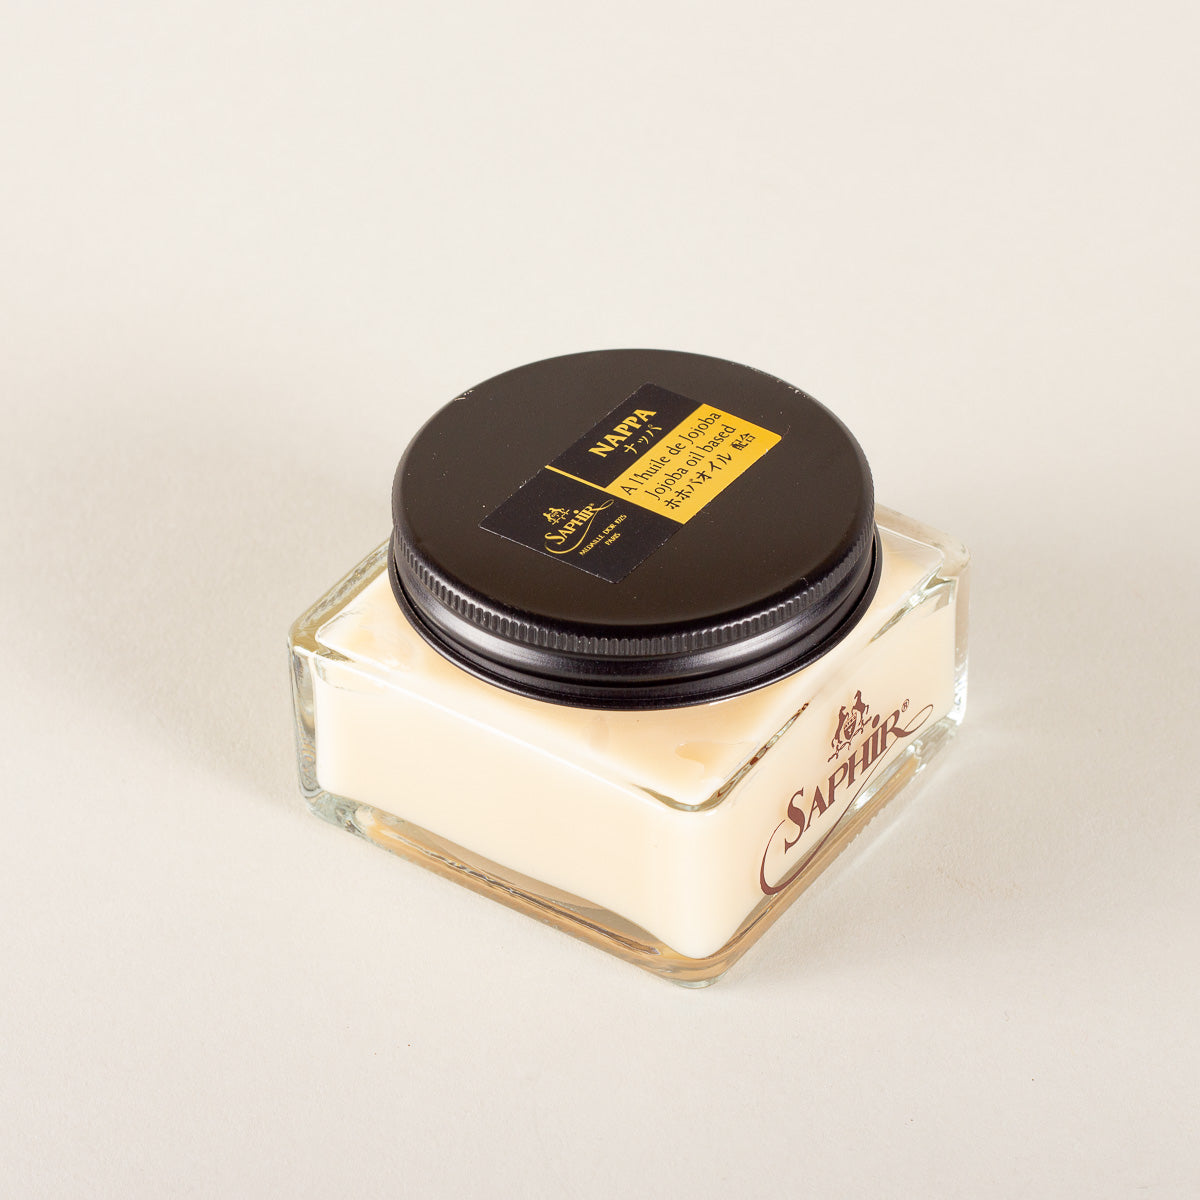 Crema Neutra Nutriente per Scarpe in Pelle secca - Saphir Medaille D'Or  Mink Oil